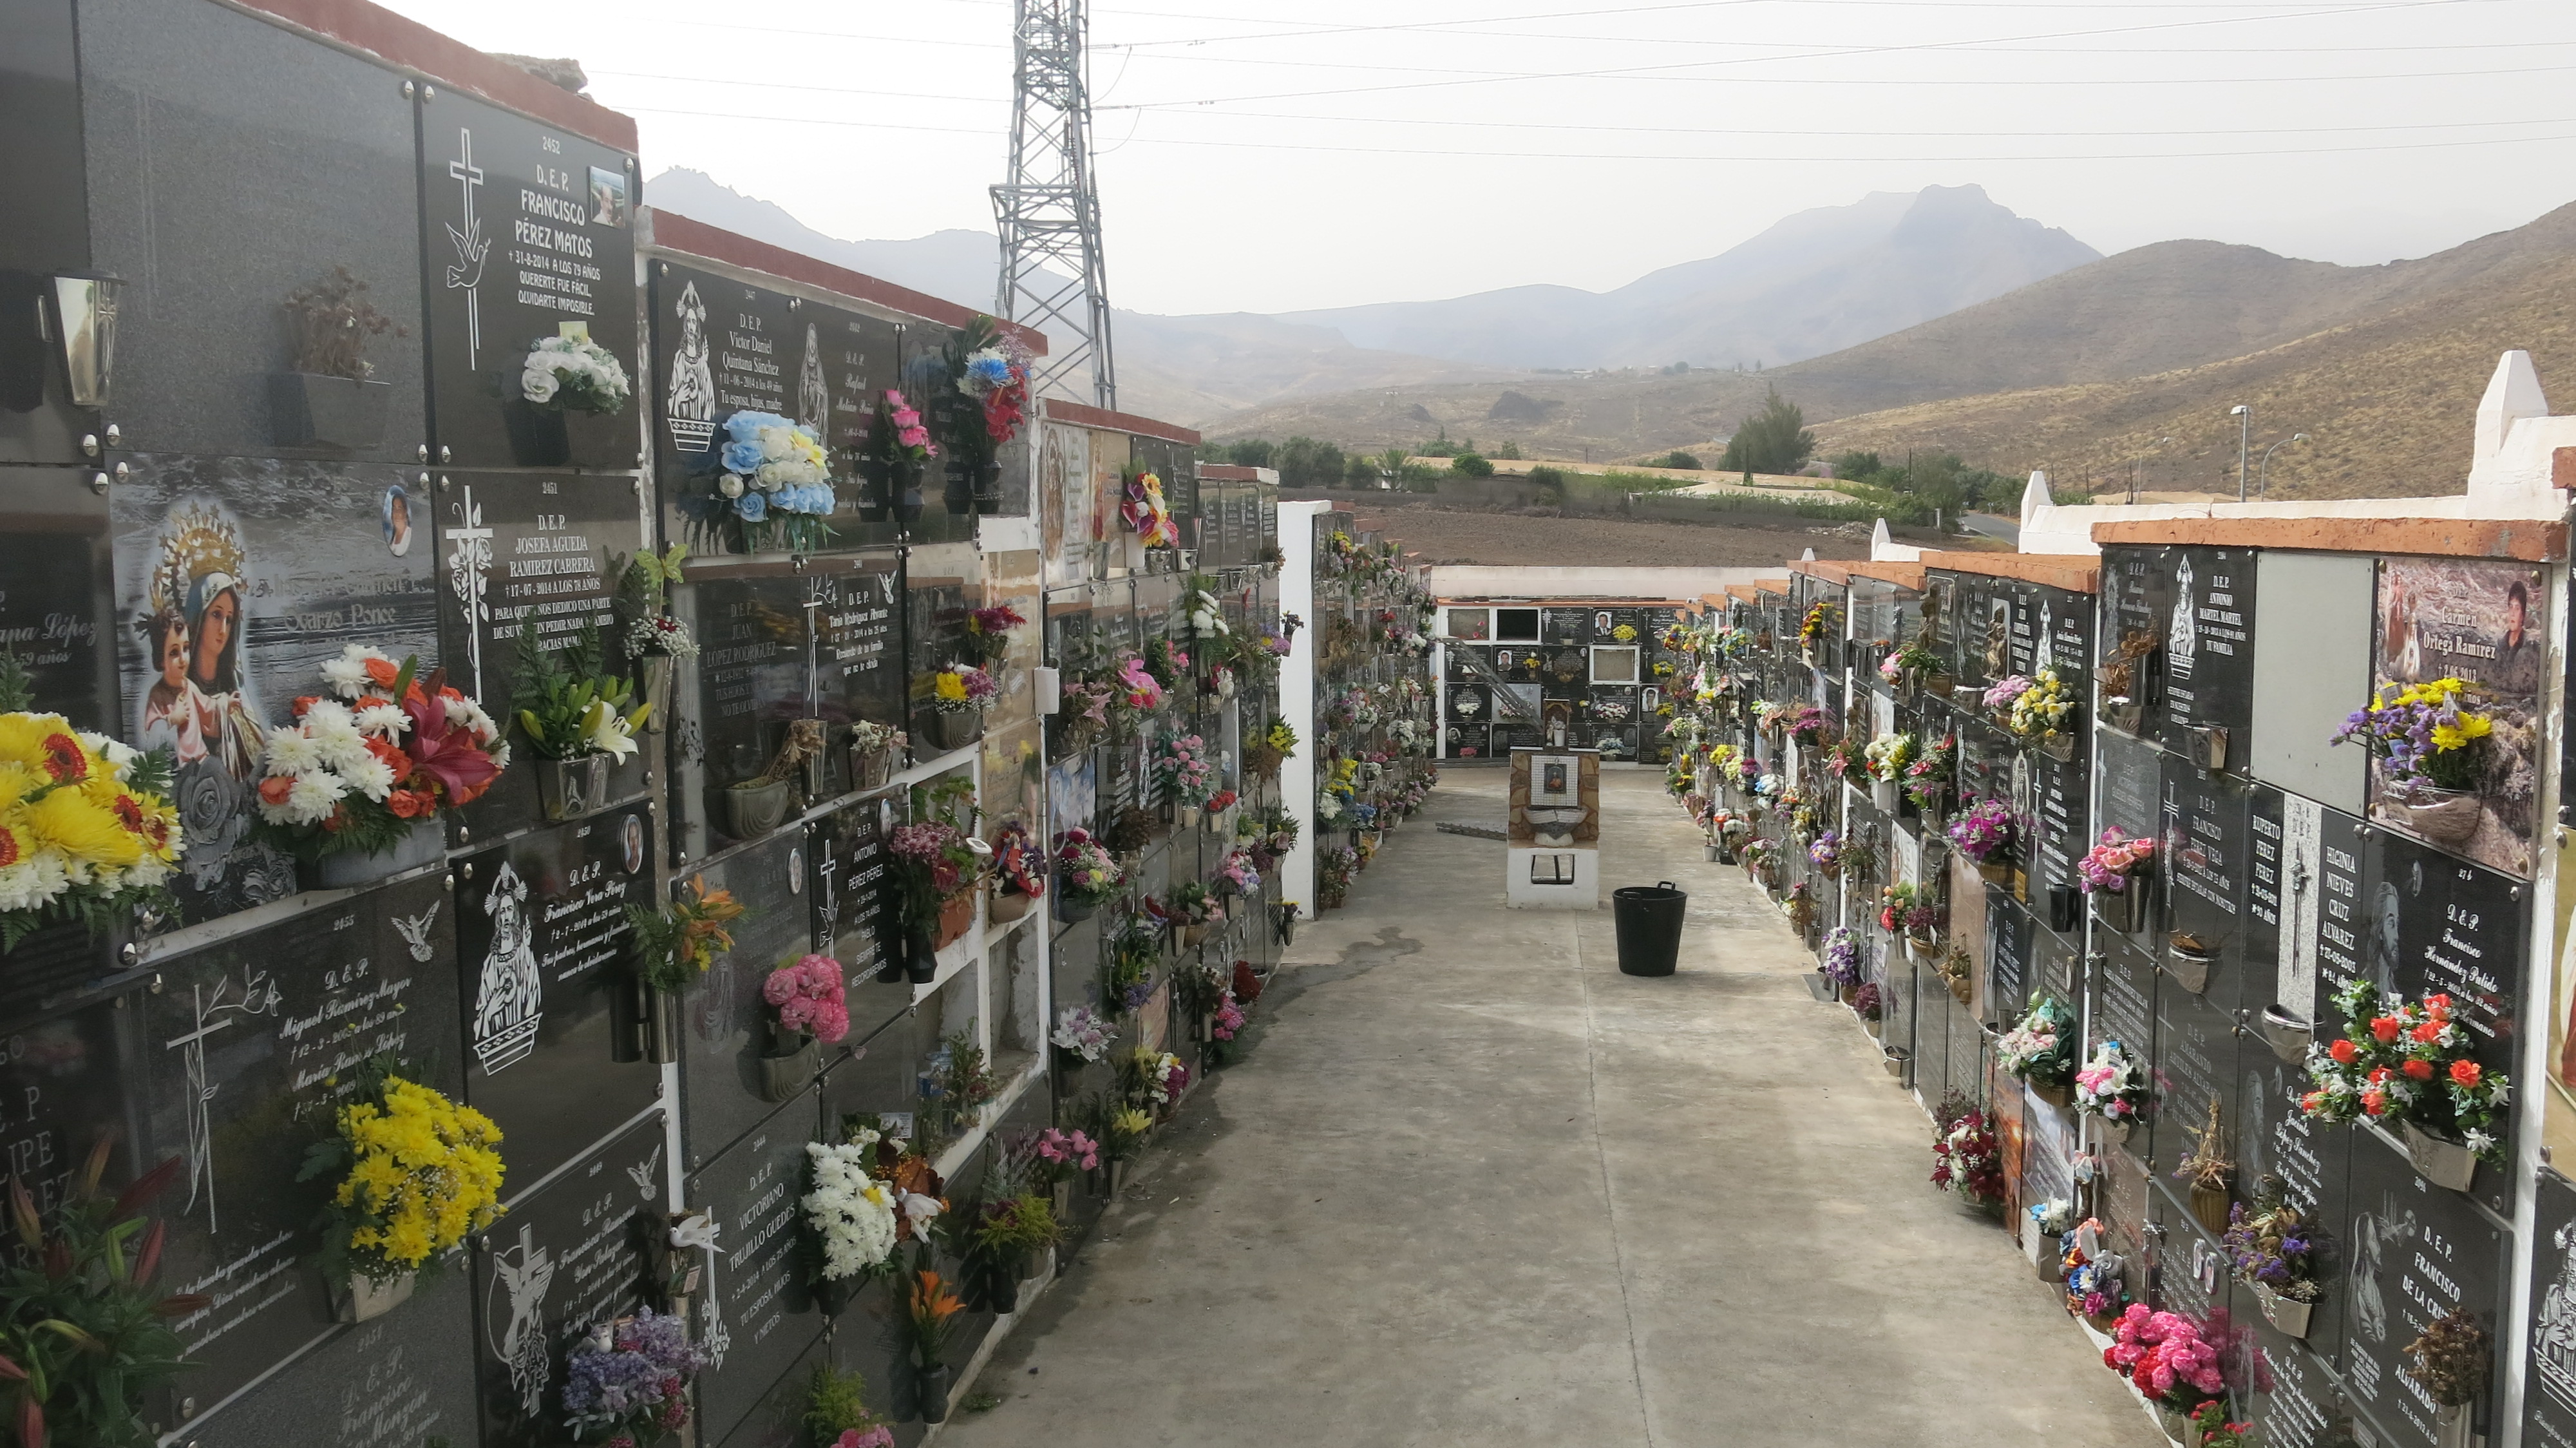 Santa Lucía amplía el horario de visita de los cementerios y la desinfección de estos espacios con motivo del Día de Difuntos